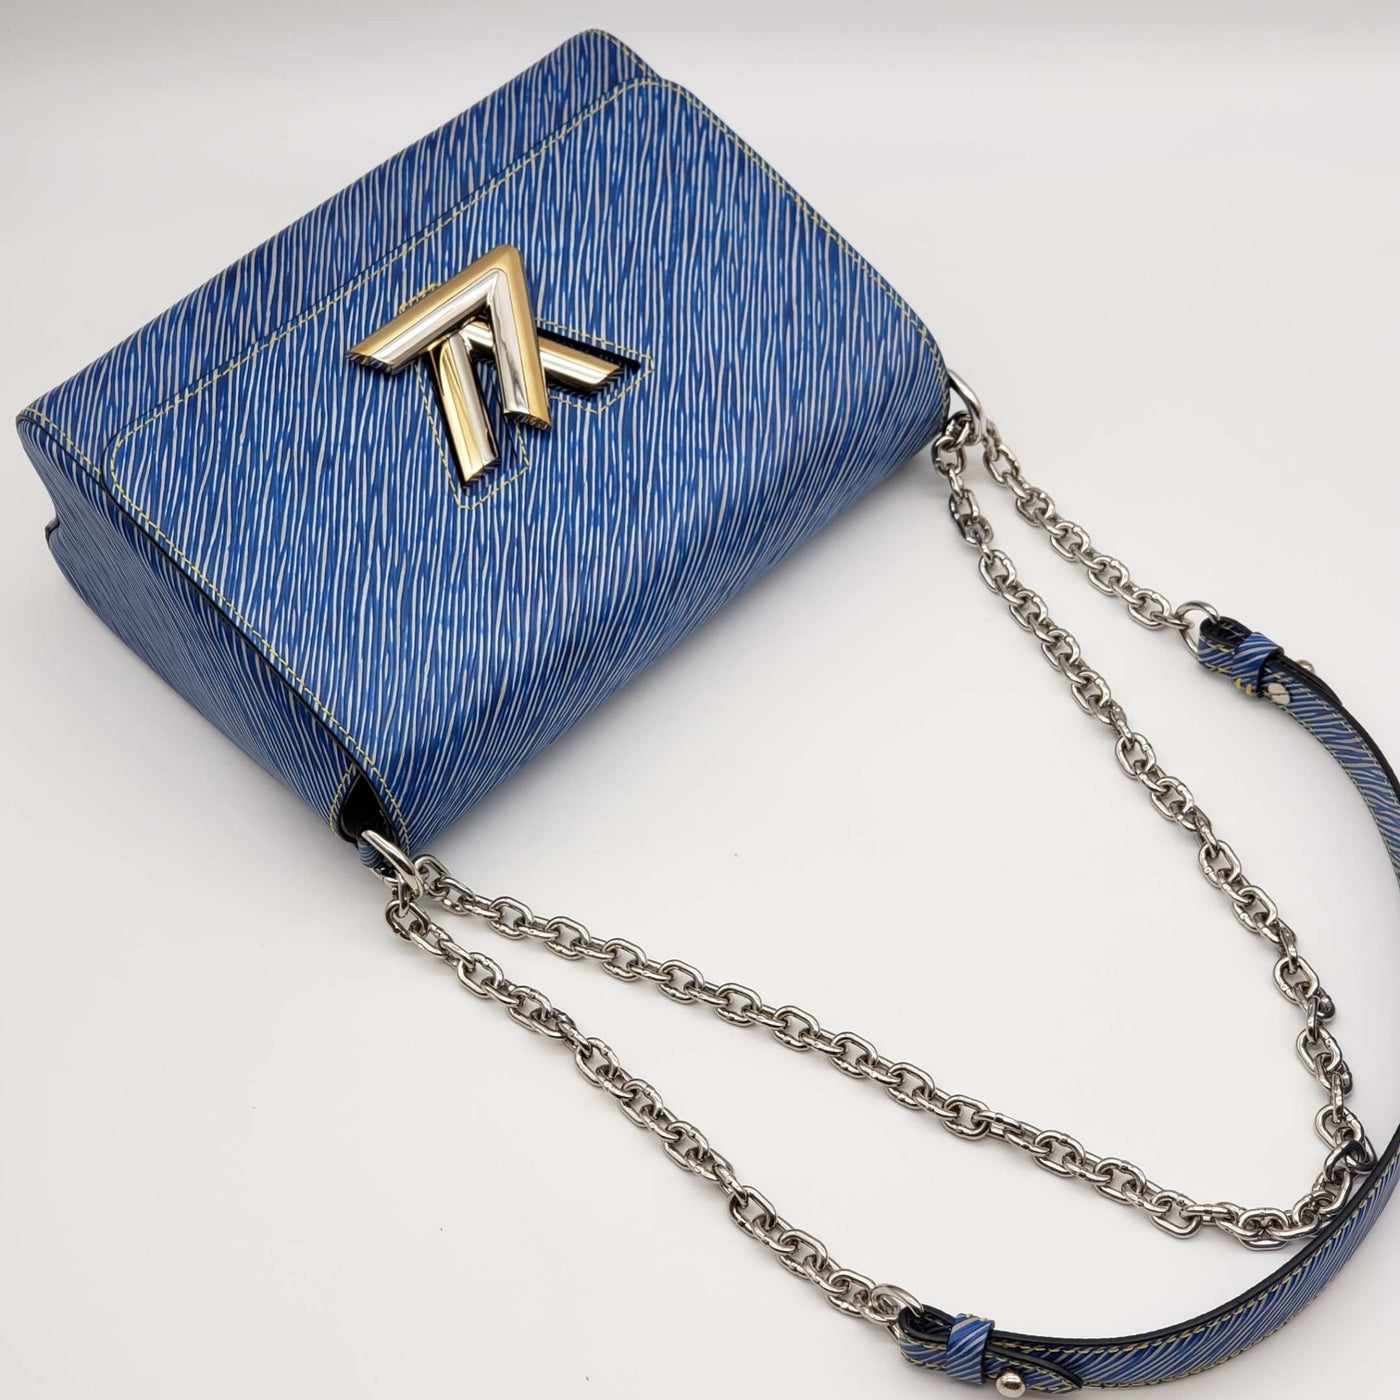 Louis Vuitton Twist MM Blue Epi Leather LV Chain Shoulder Hand Bag